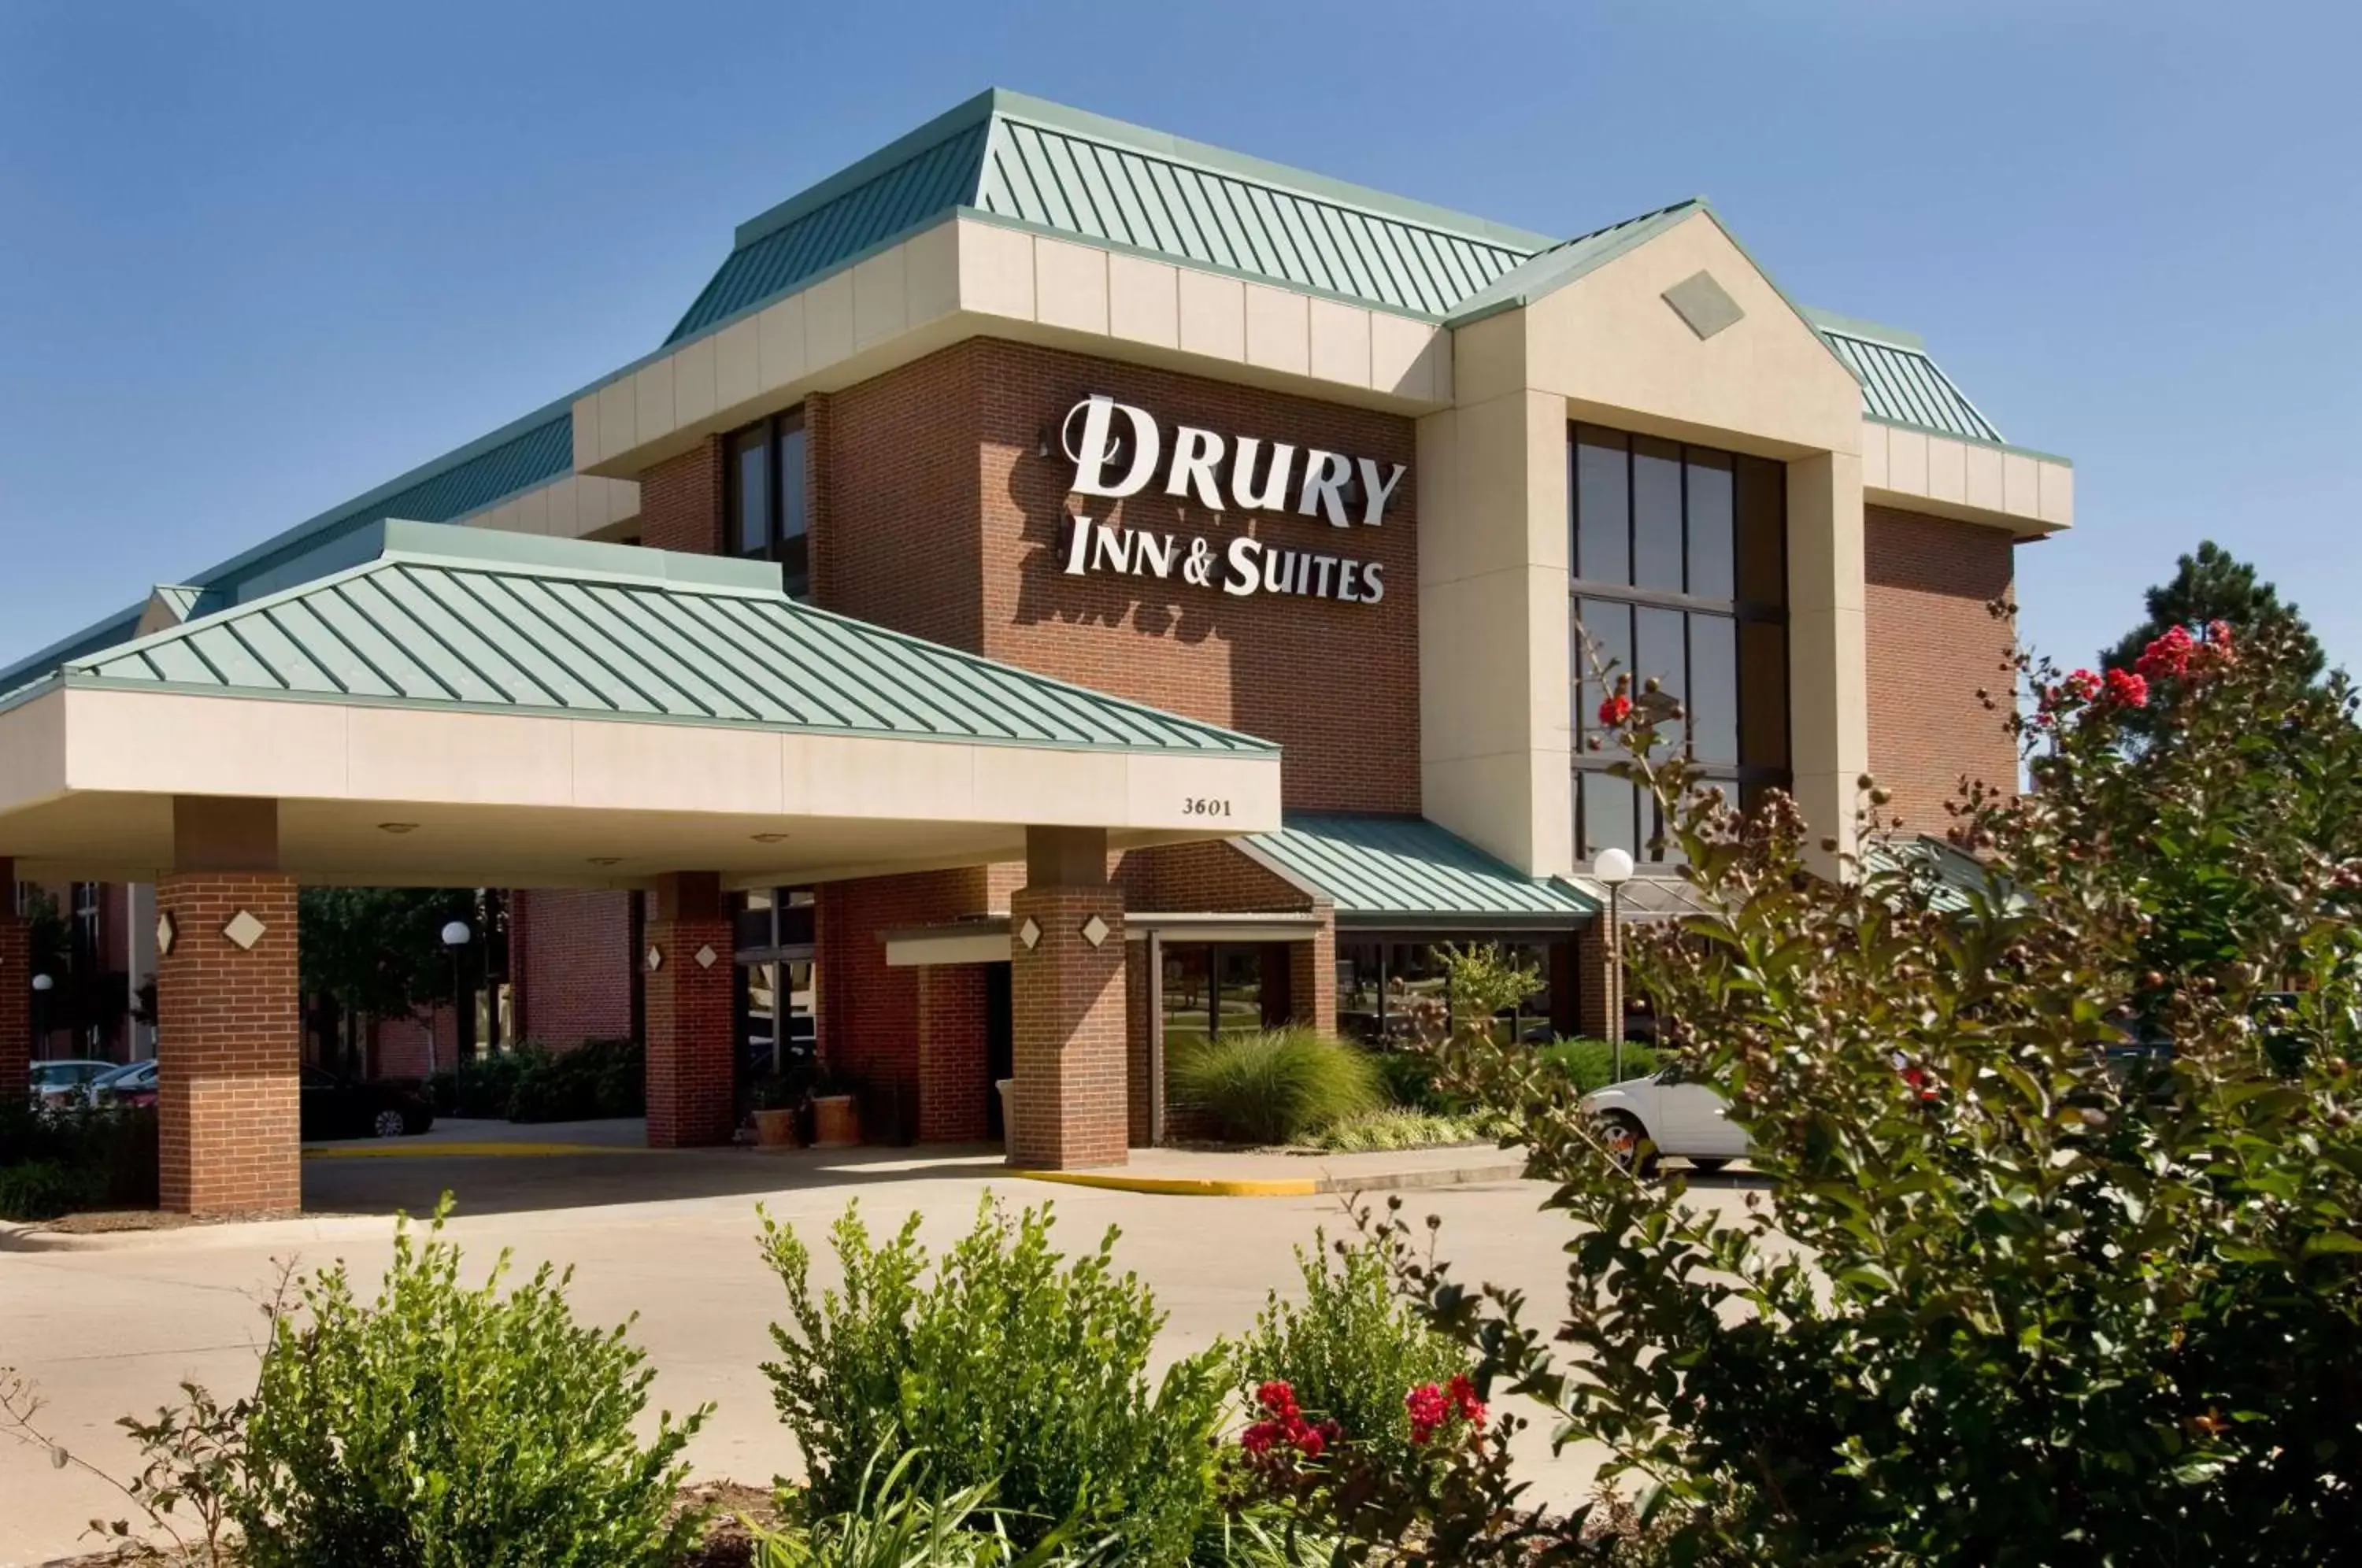 Property Building in Drury Inn & Suites Joplin